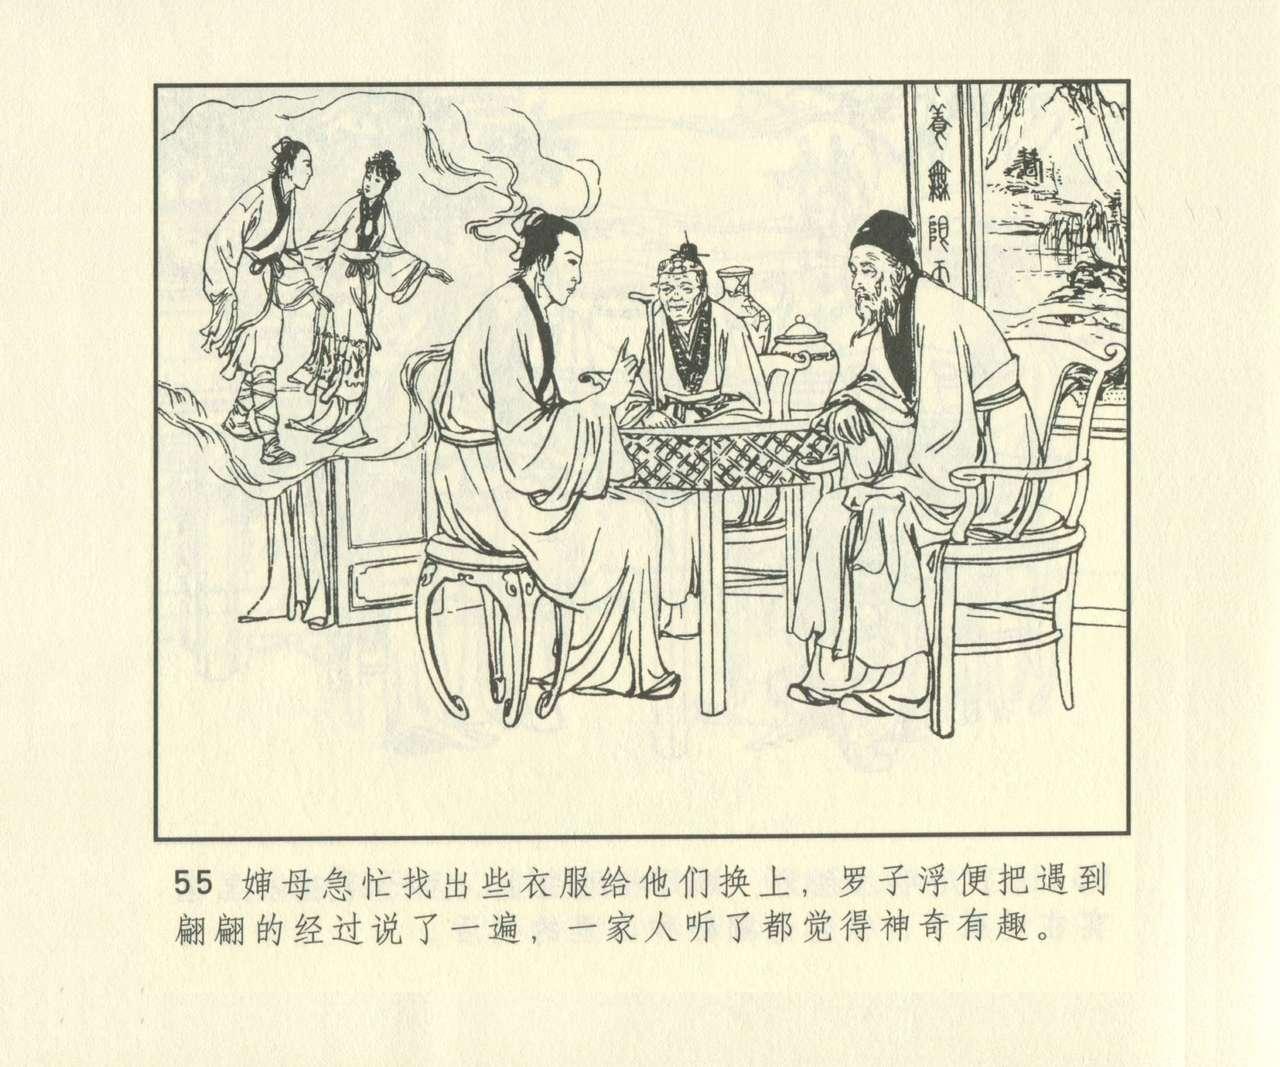 聊斋志异 张玮等绘 天津人民美术出版社 卷二十一 ~ 三十 671